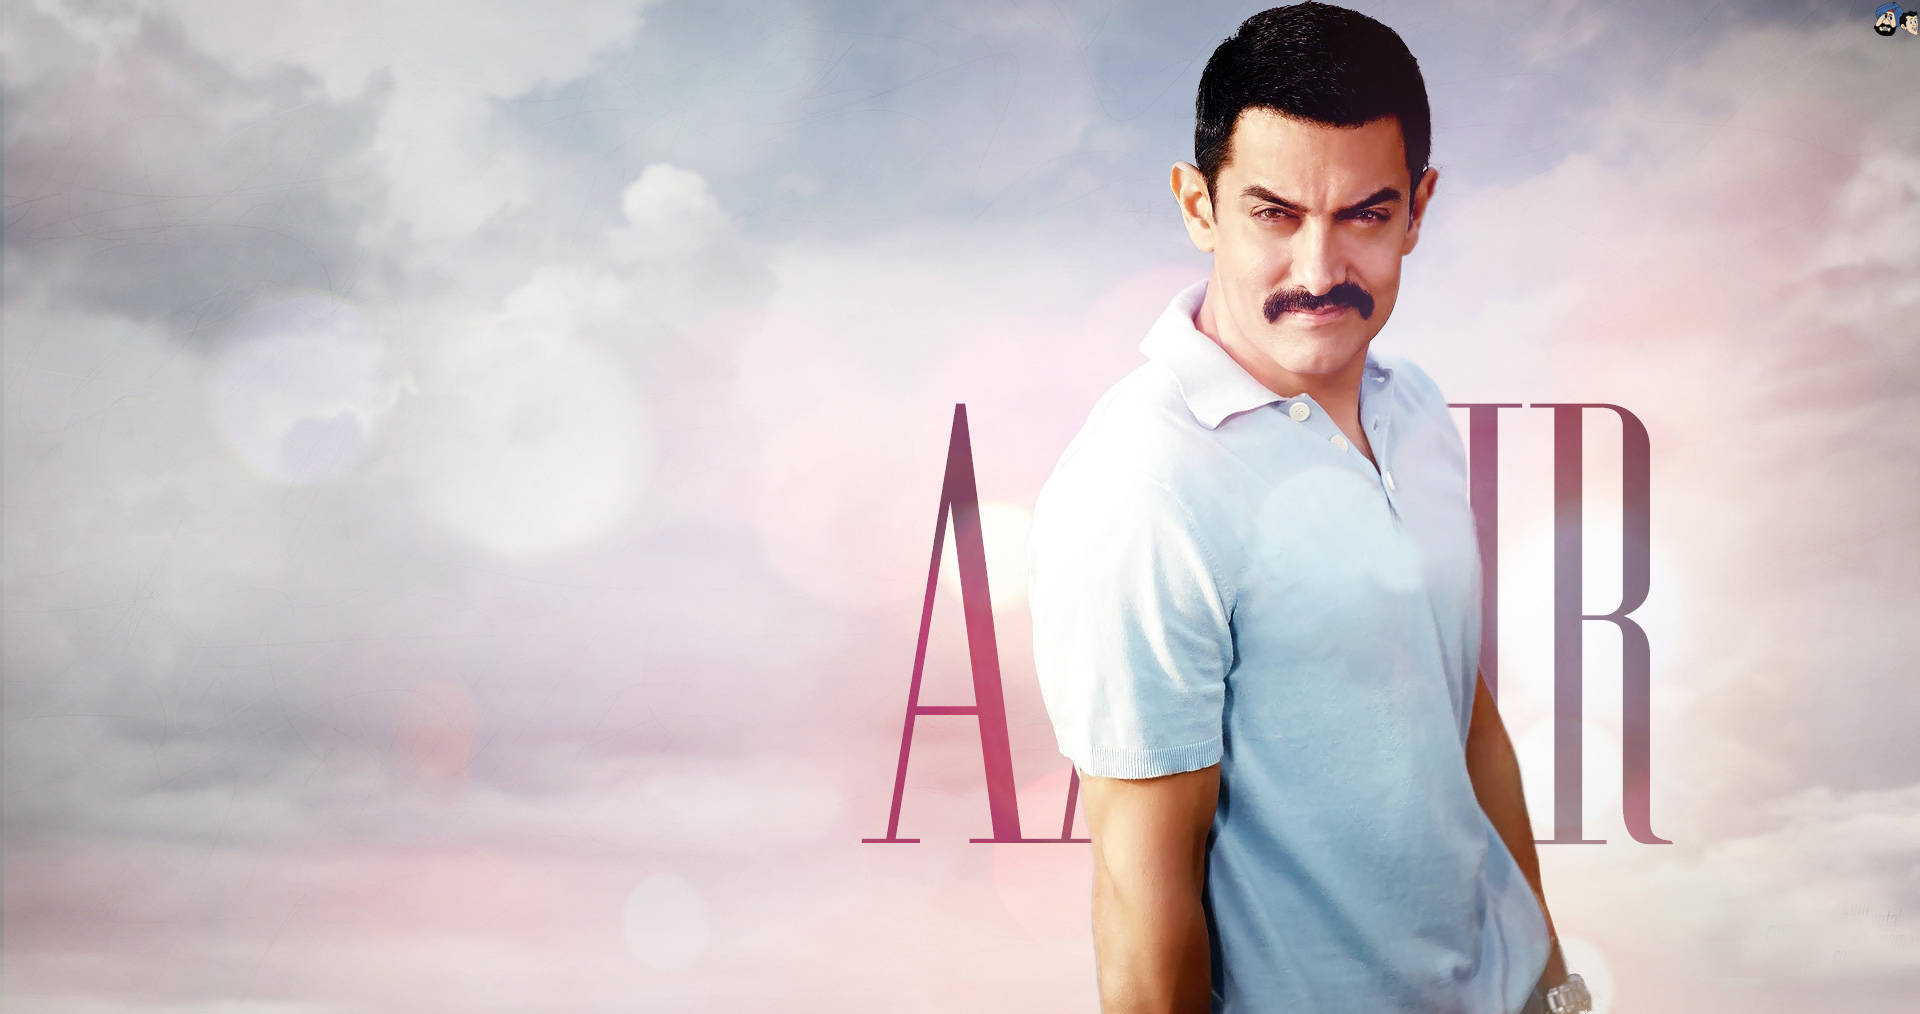 Aamirkhan Bollywood Superstjärna Skådespelare Wallpaper